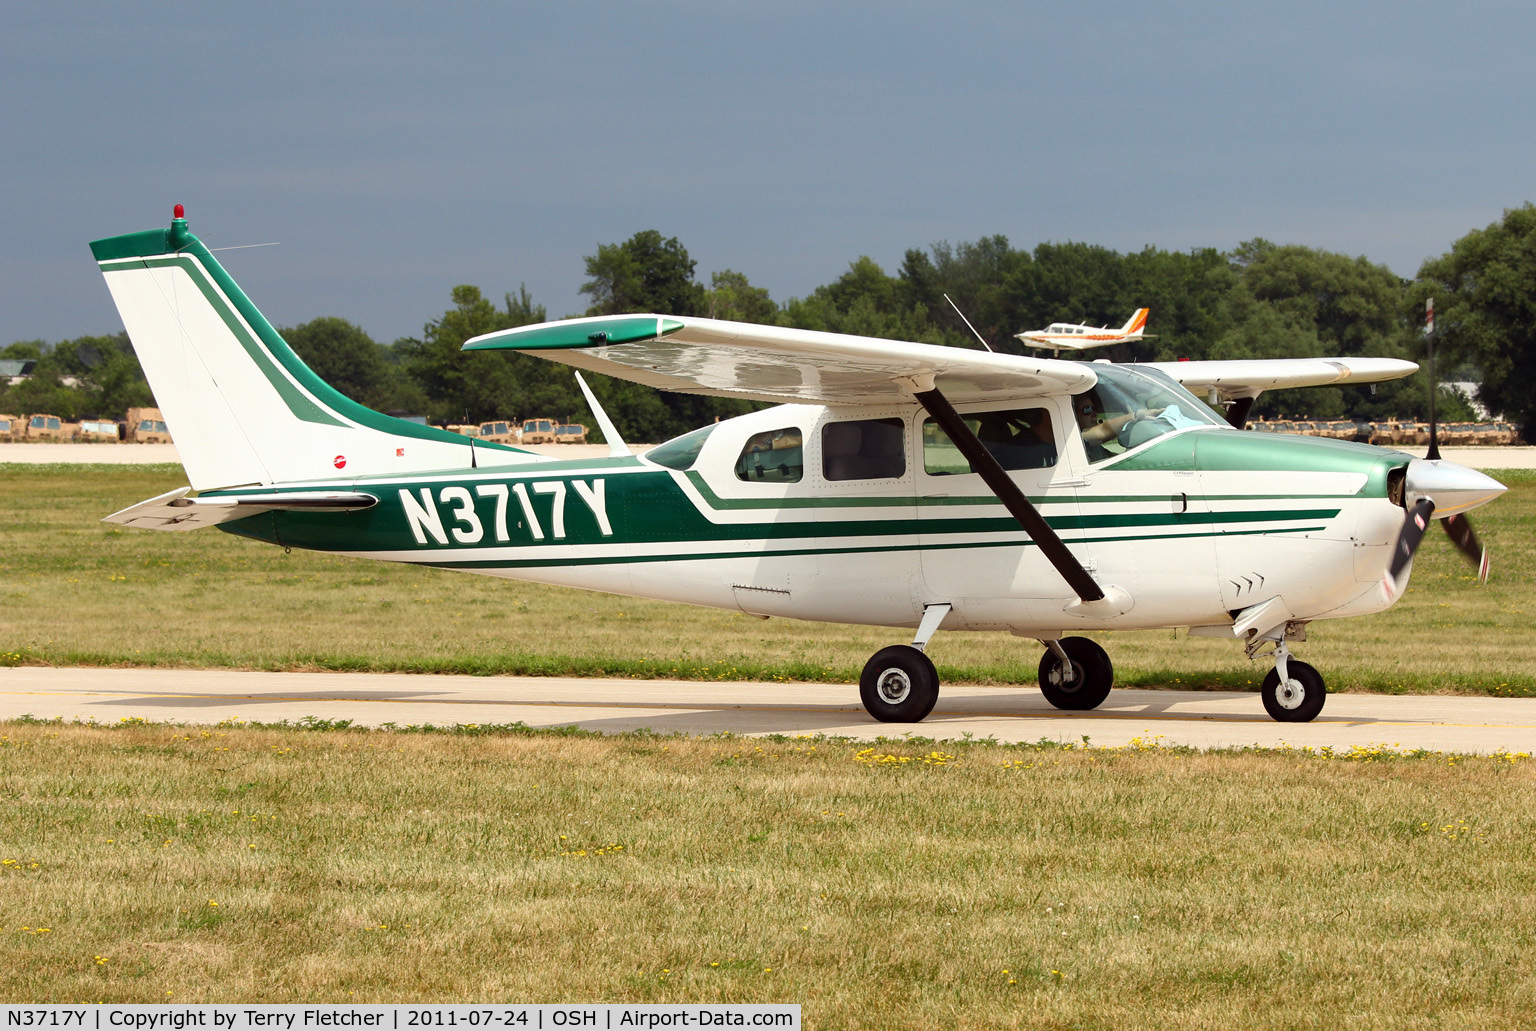 N3717Y, 1963 Cessna 210C C/N 21058217, 1963 Cessna 210C, c/n: 21058217 at 2011 Oshkosh